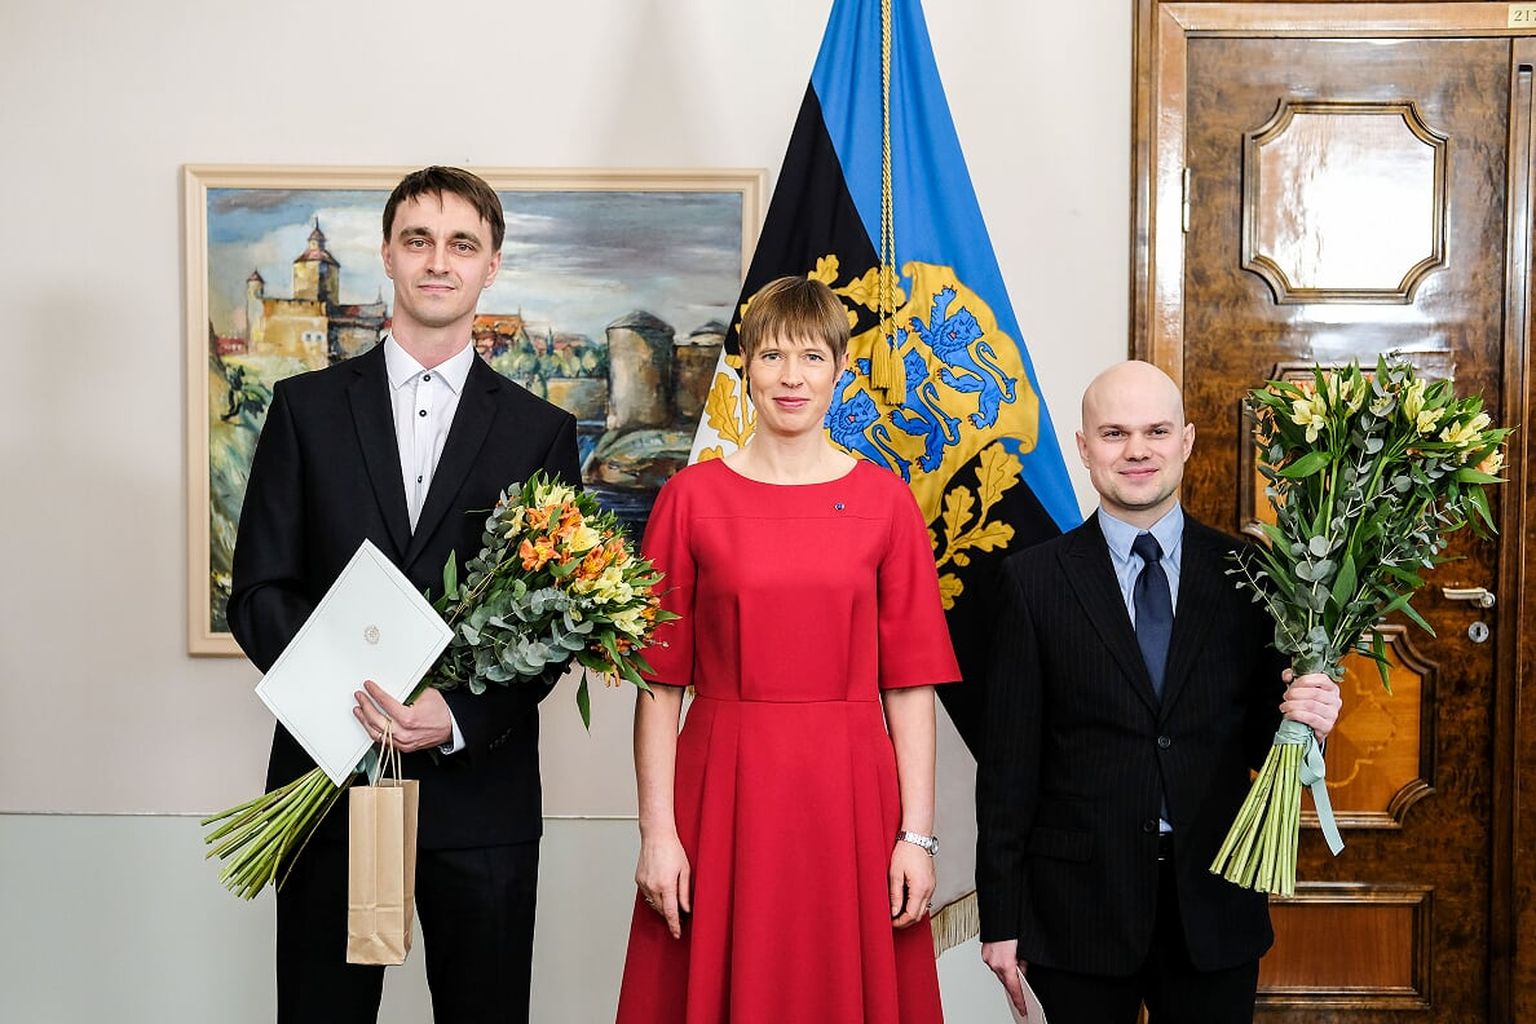 Eelmise aasta laureaadid Juri Belikov (vasakul) ning Jaan Aru (paremal) koos president Kersti Kaljulaidiga preemiate üleandmise tseremoonial.